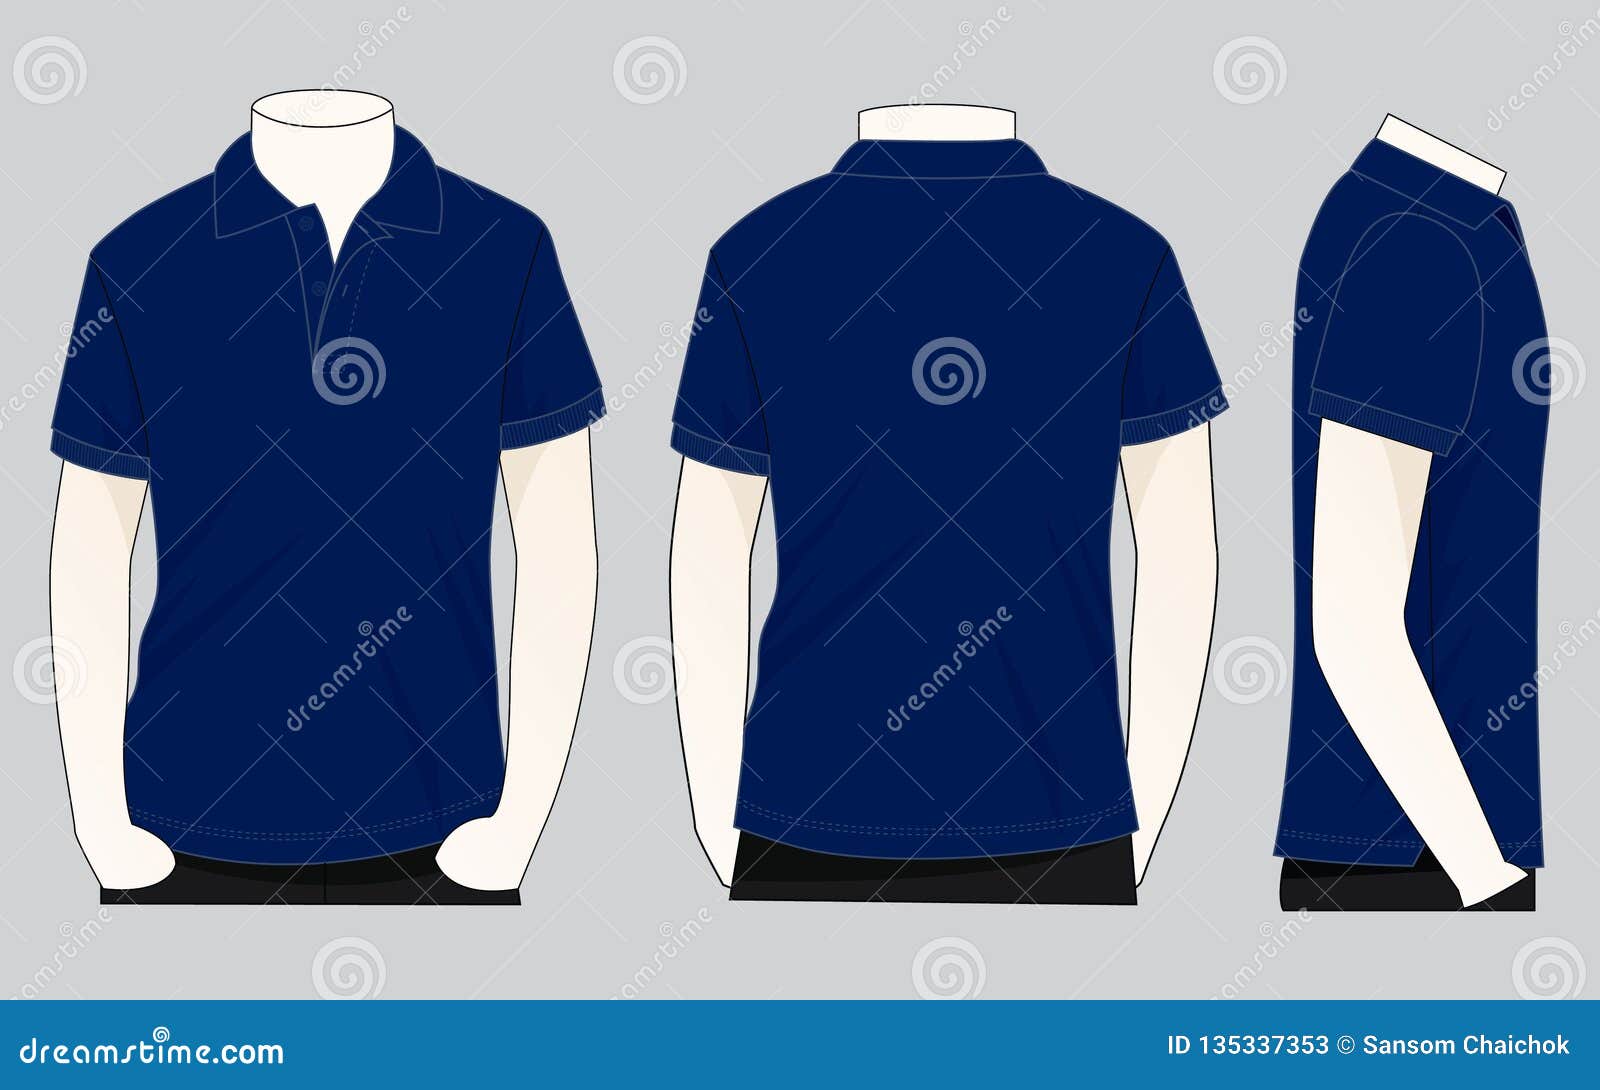 Men S Navy Blue Short Sleeves Polo Shirt Template Vector Stock ...